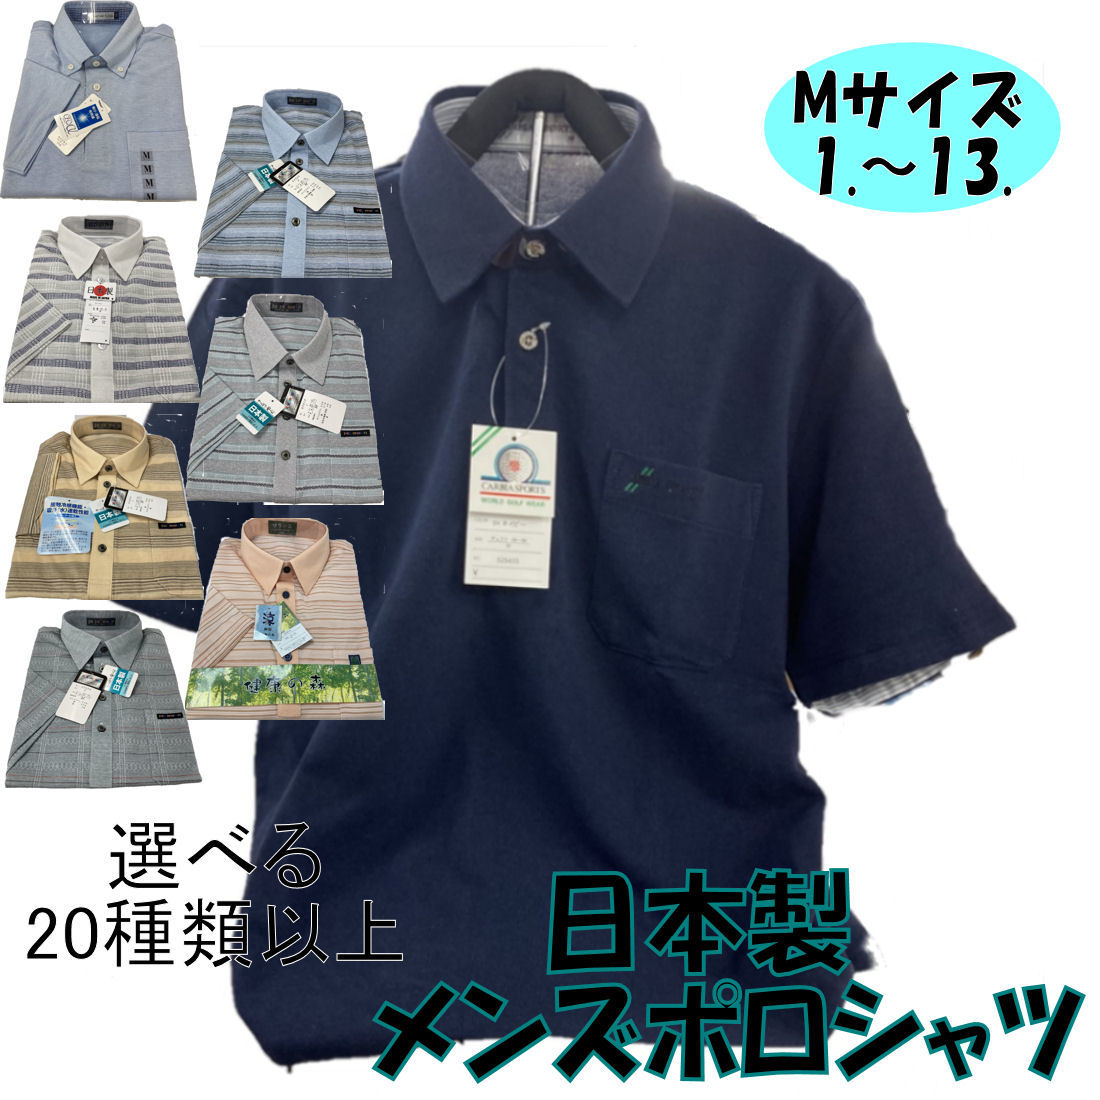 150円 発売モデル 紳士半袖ポロシャツＭサイズ